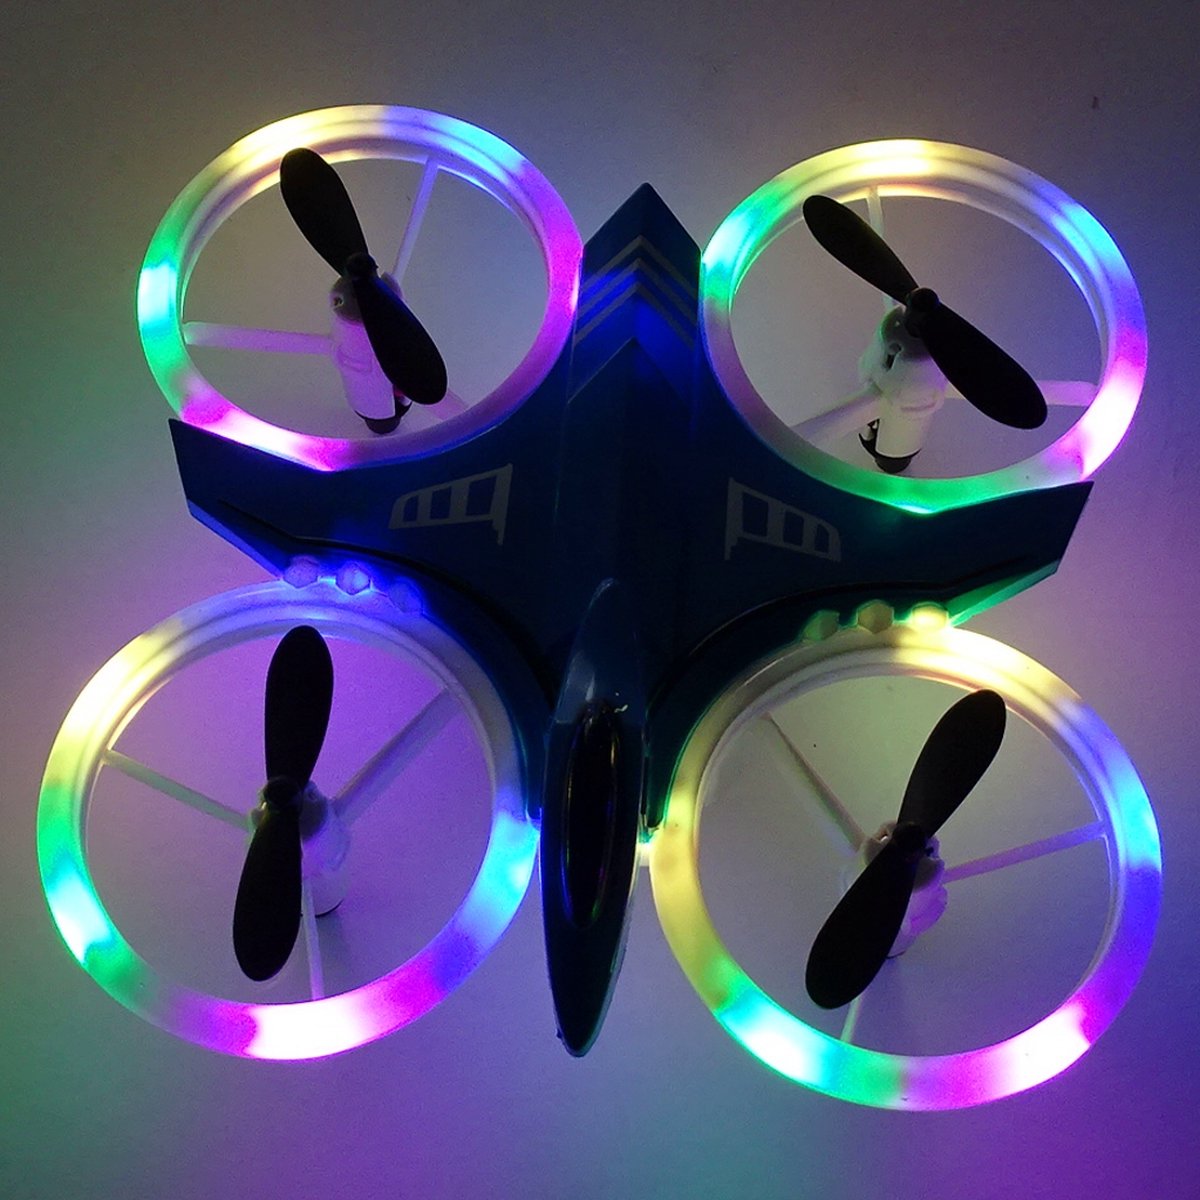 Mini drone voor kinderen - disco Ledverlichting- met controller - met extra accu- Blauwe romp - leuke gadget